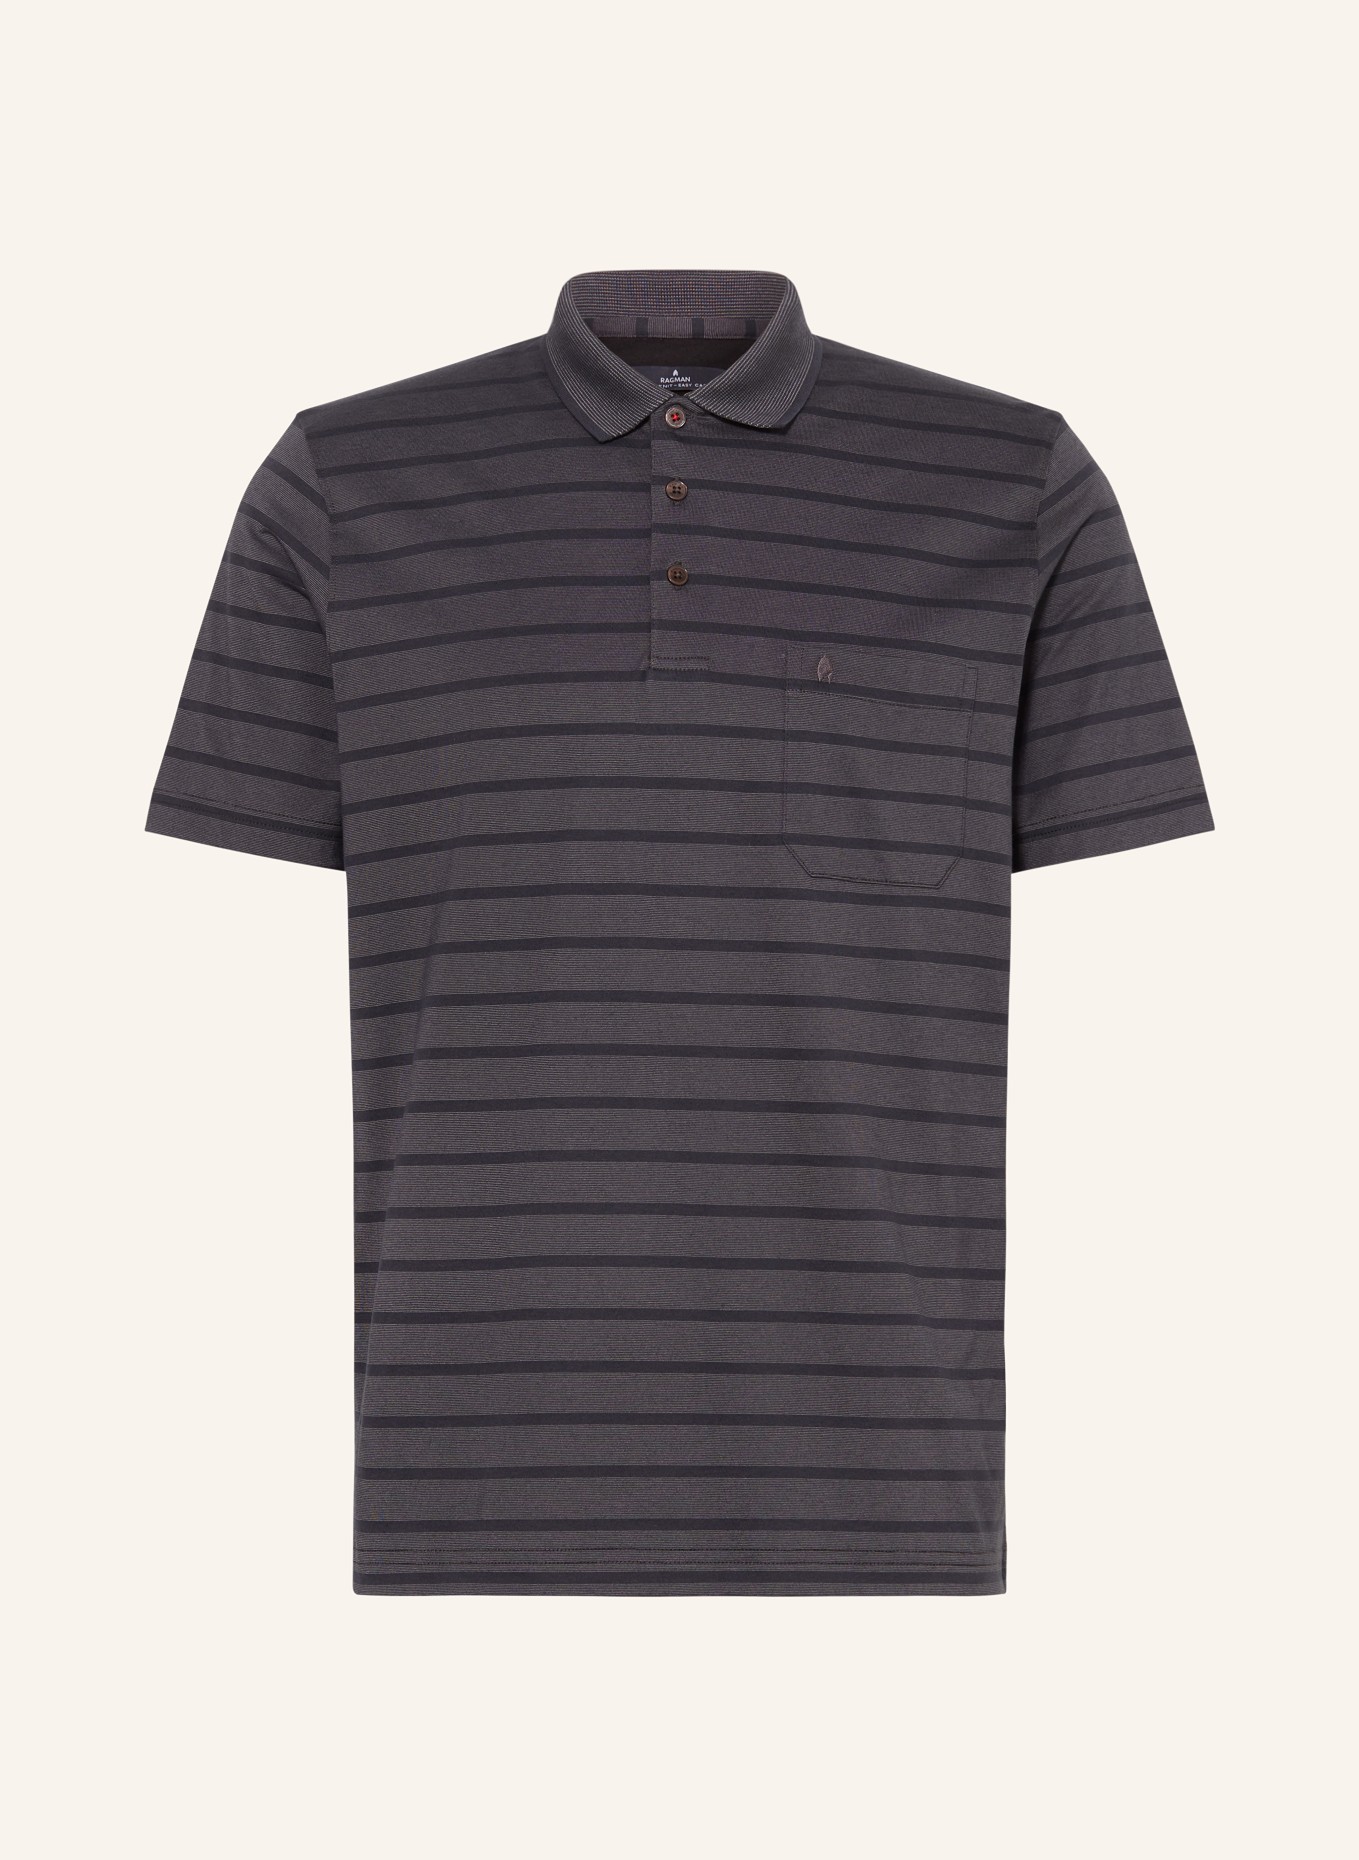 RAGMAN Jersey polo shirt, Color: BLACK (Image 1)